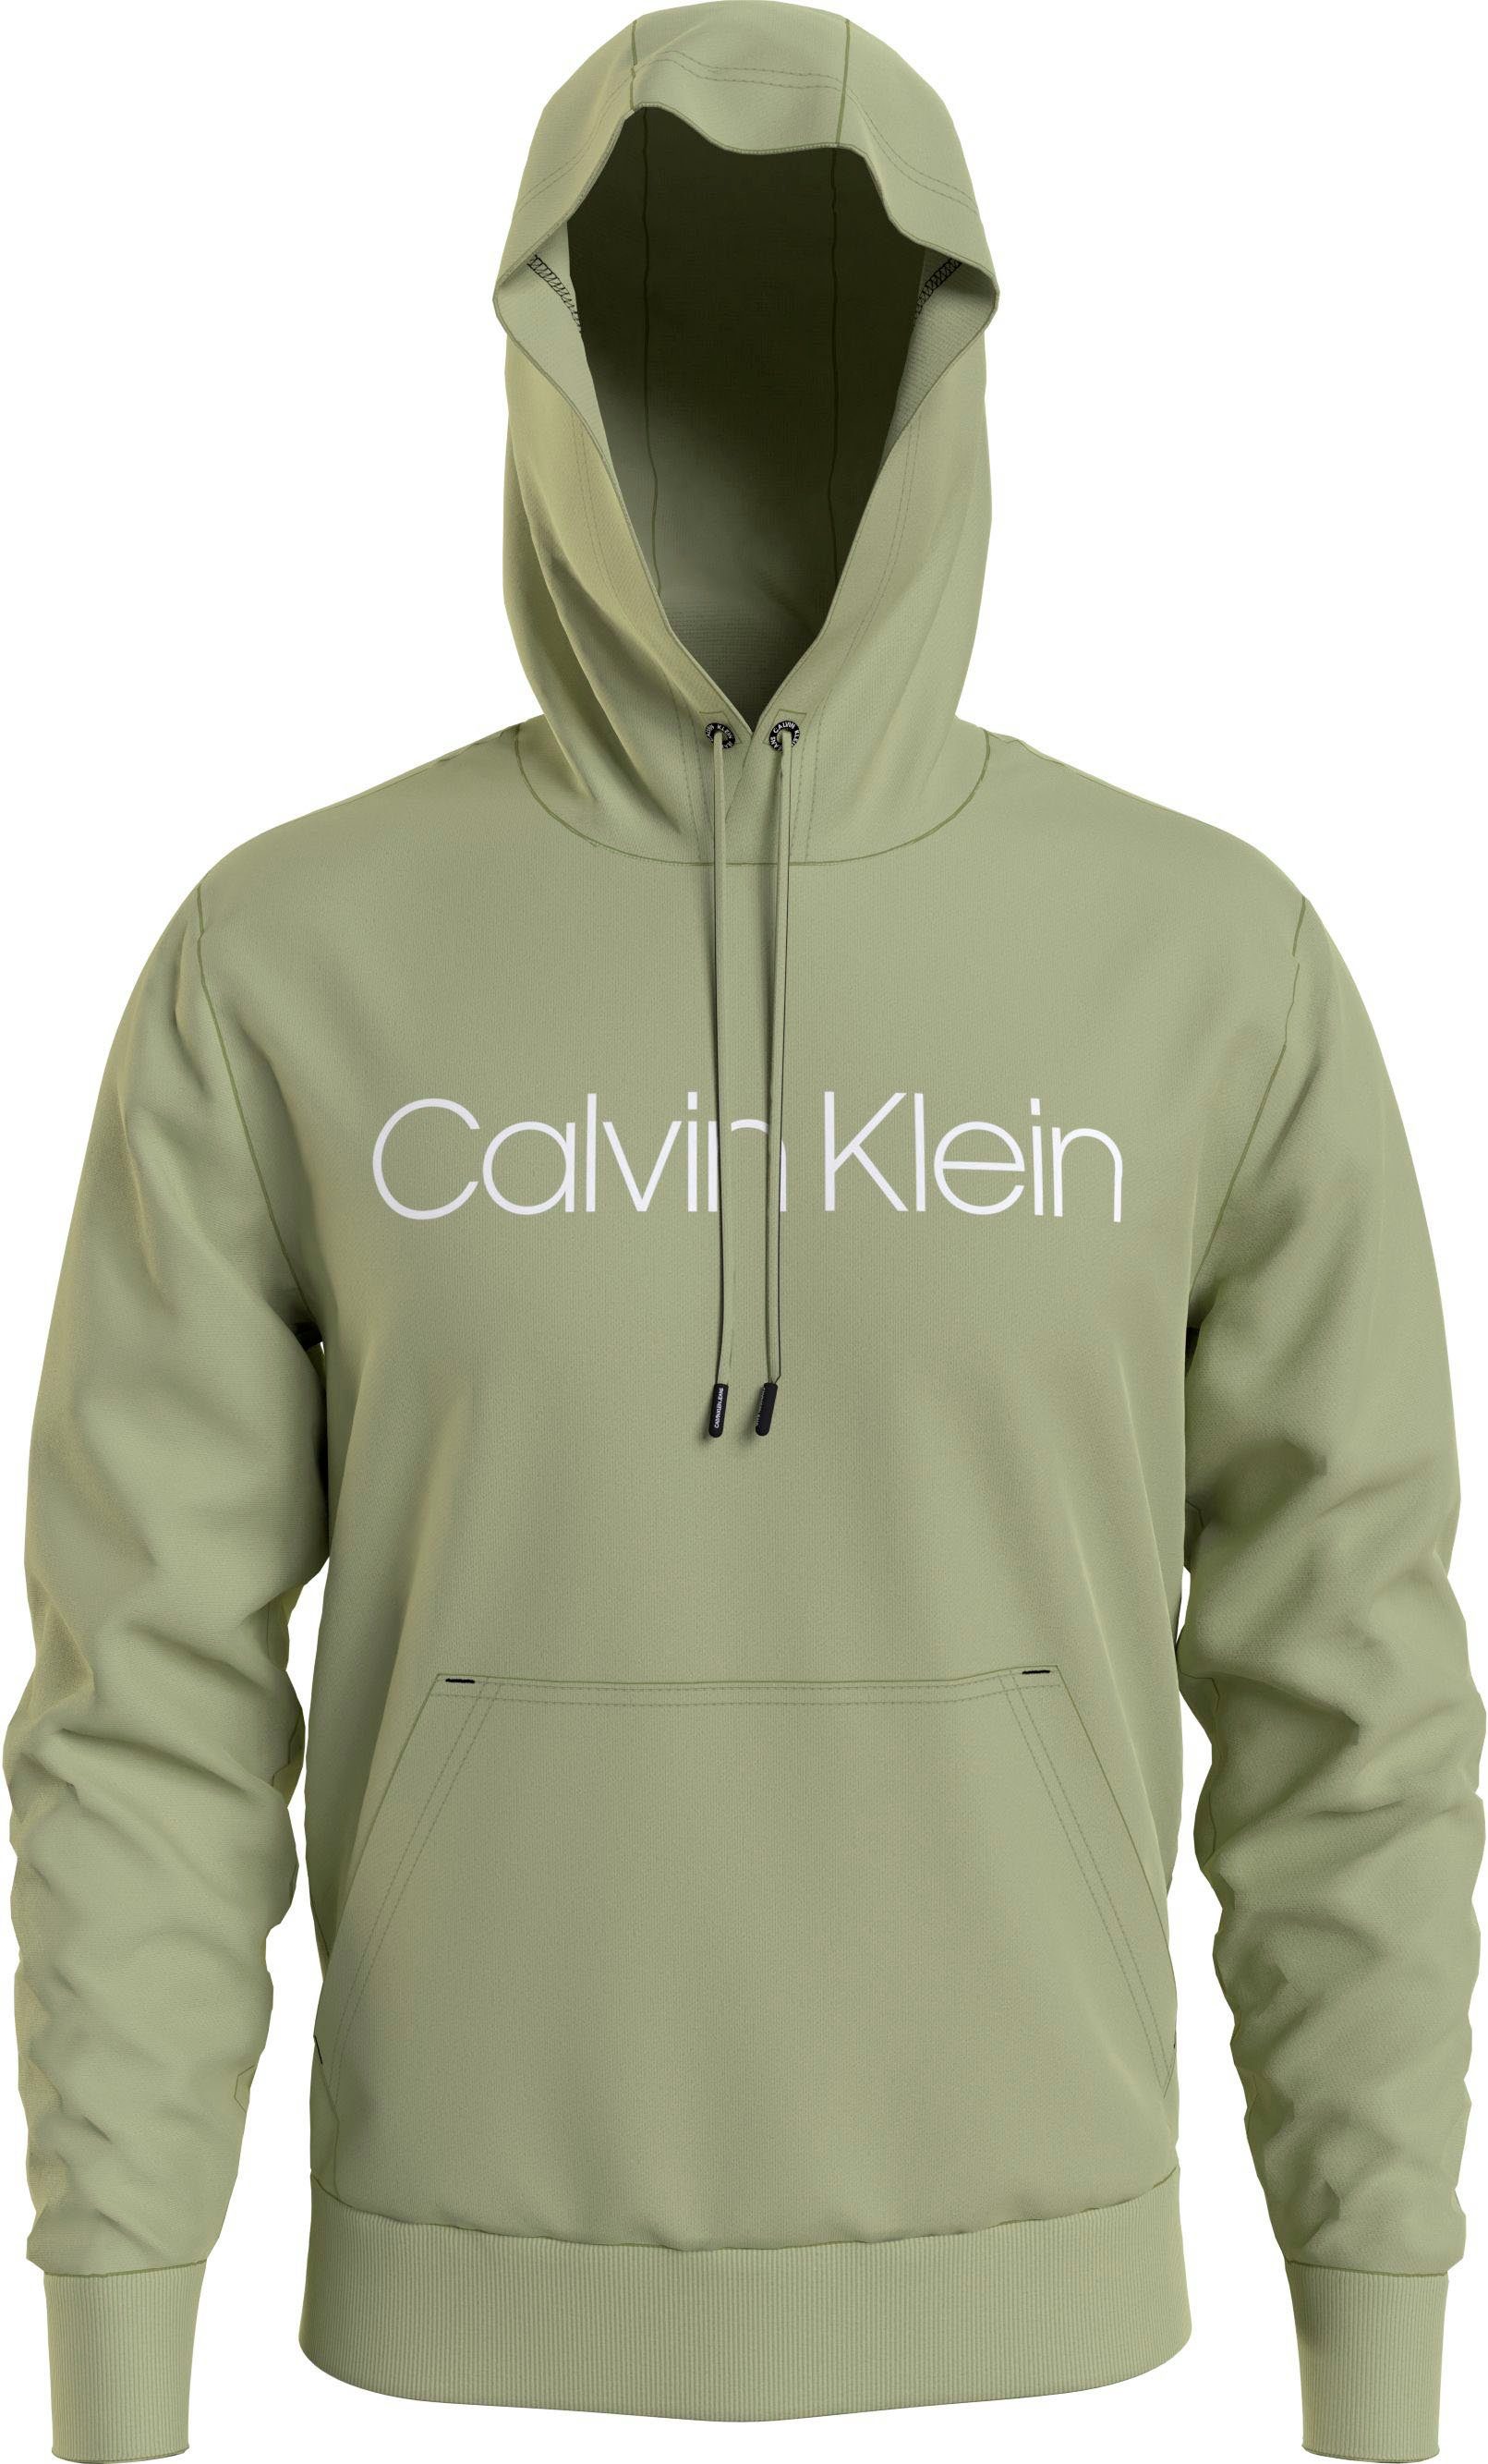 Big&Tall Schriftzug HOODIE Tea Klein Calvin Herb LOGO BT-COTTON mit Kapuzensweatshirt